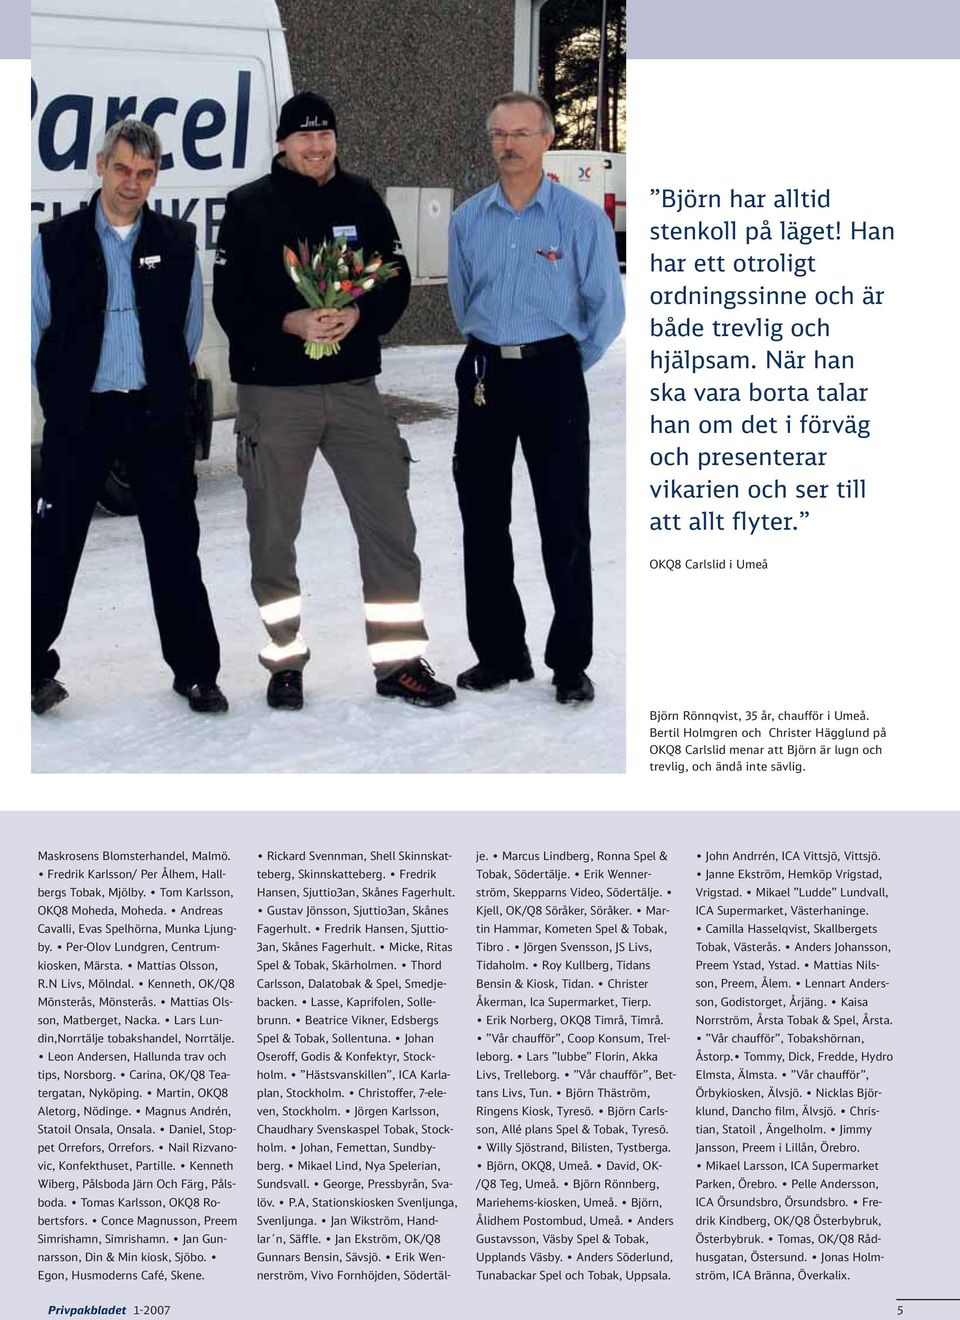 Bertil Holmgren och Christer Hägglund på OKQ8 Carlslid menar att Björn är lugn och trevlig, och ändå inte sävlig. Maskrosens Blomsterhandel, Malmö.